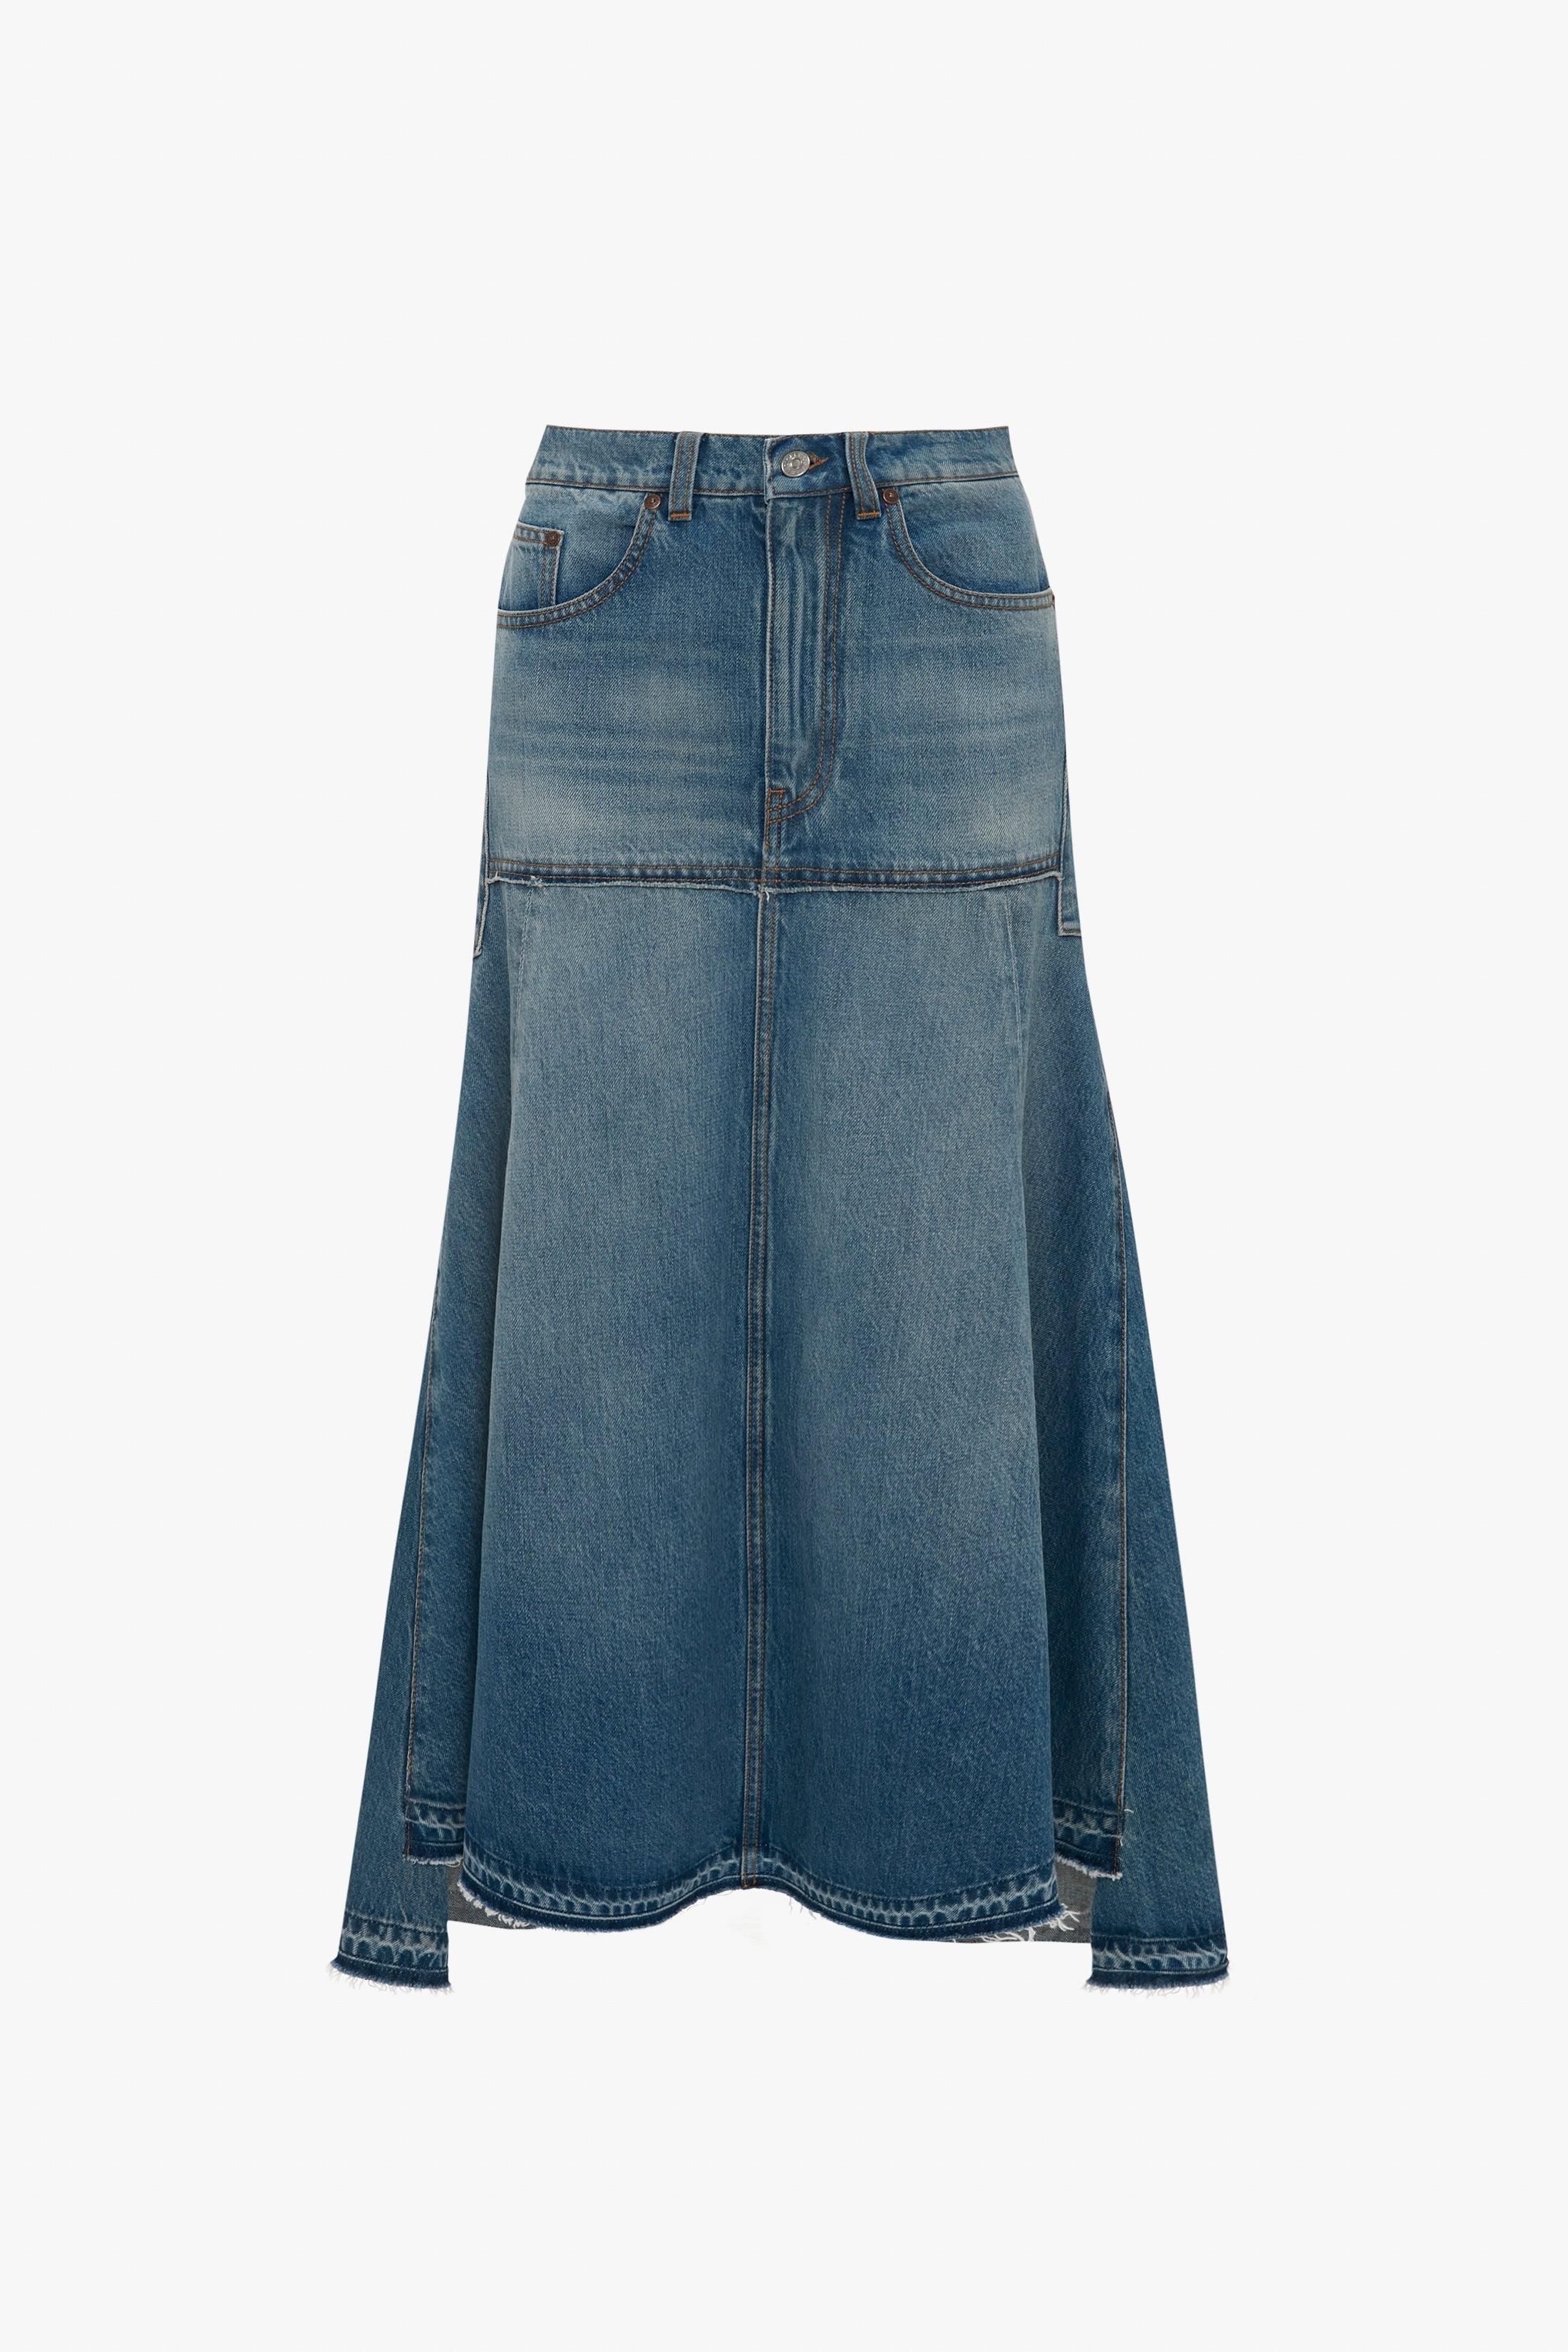 Patched Denim Skirt In Vintage Wash - 1